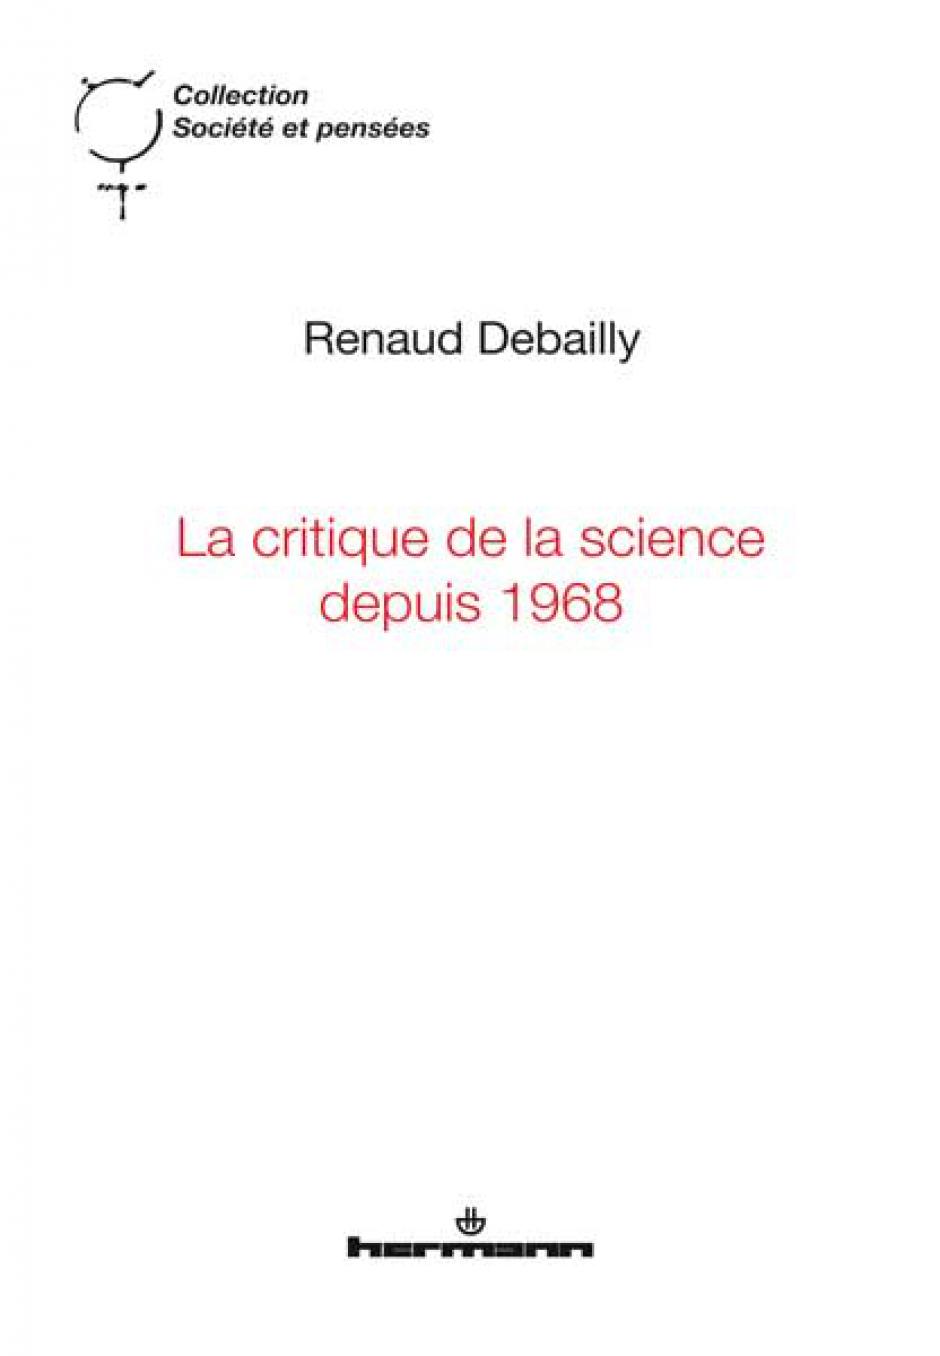 La critique de la science depuis 1968, Renaud Debailly